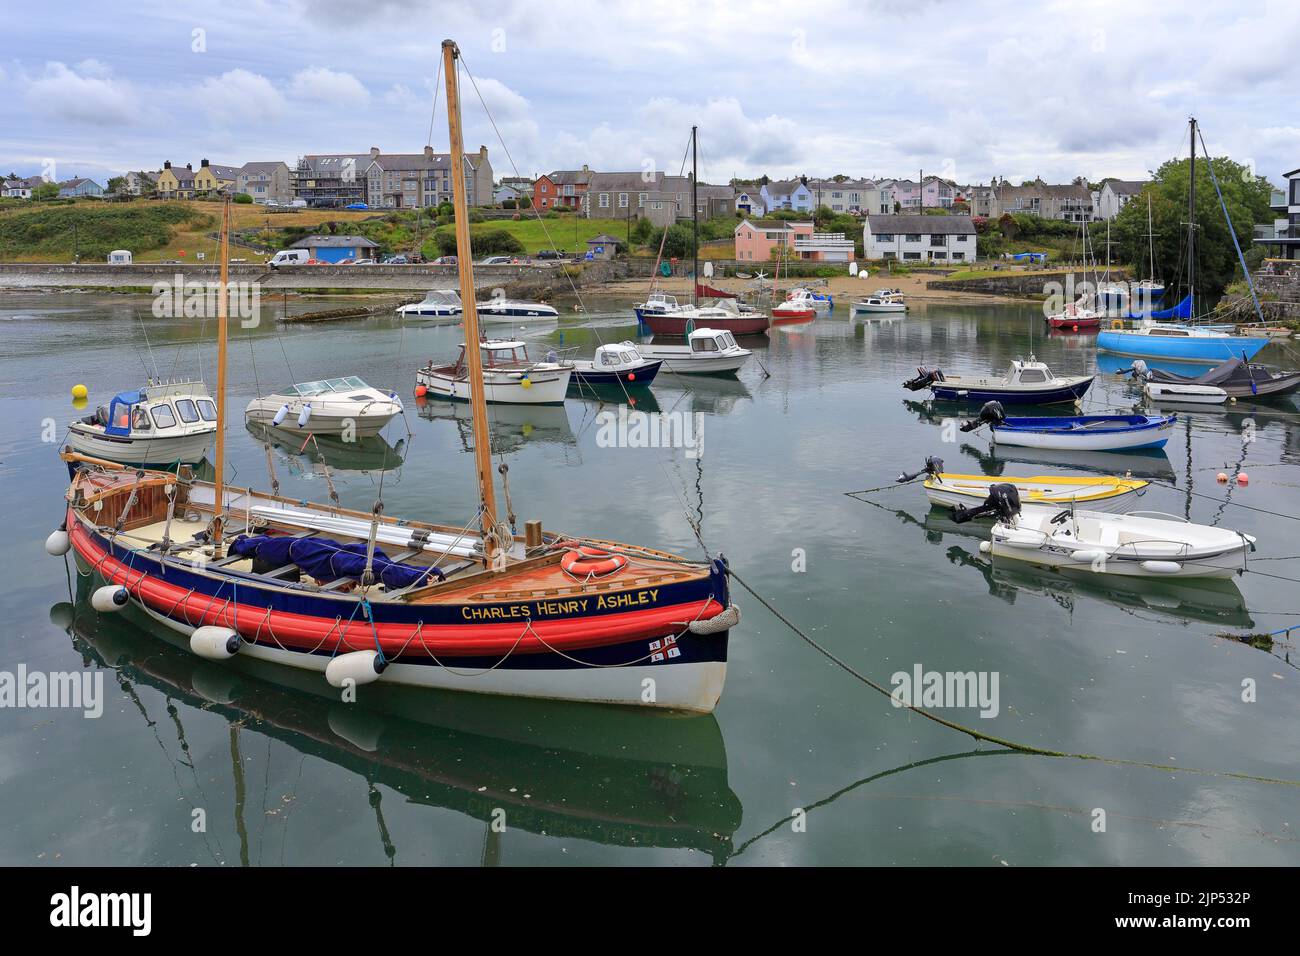 L'ancien bateau de sauvetage Charles Henry Ashley dans le port de Camaes Bay, île d'Anglesey, Ynys mon, pays de Galles du Nord, Royaume-Uni. Banque D'Images